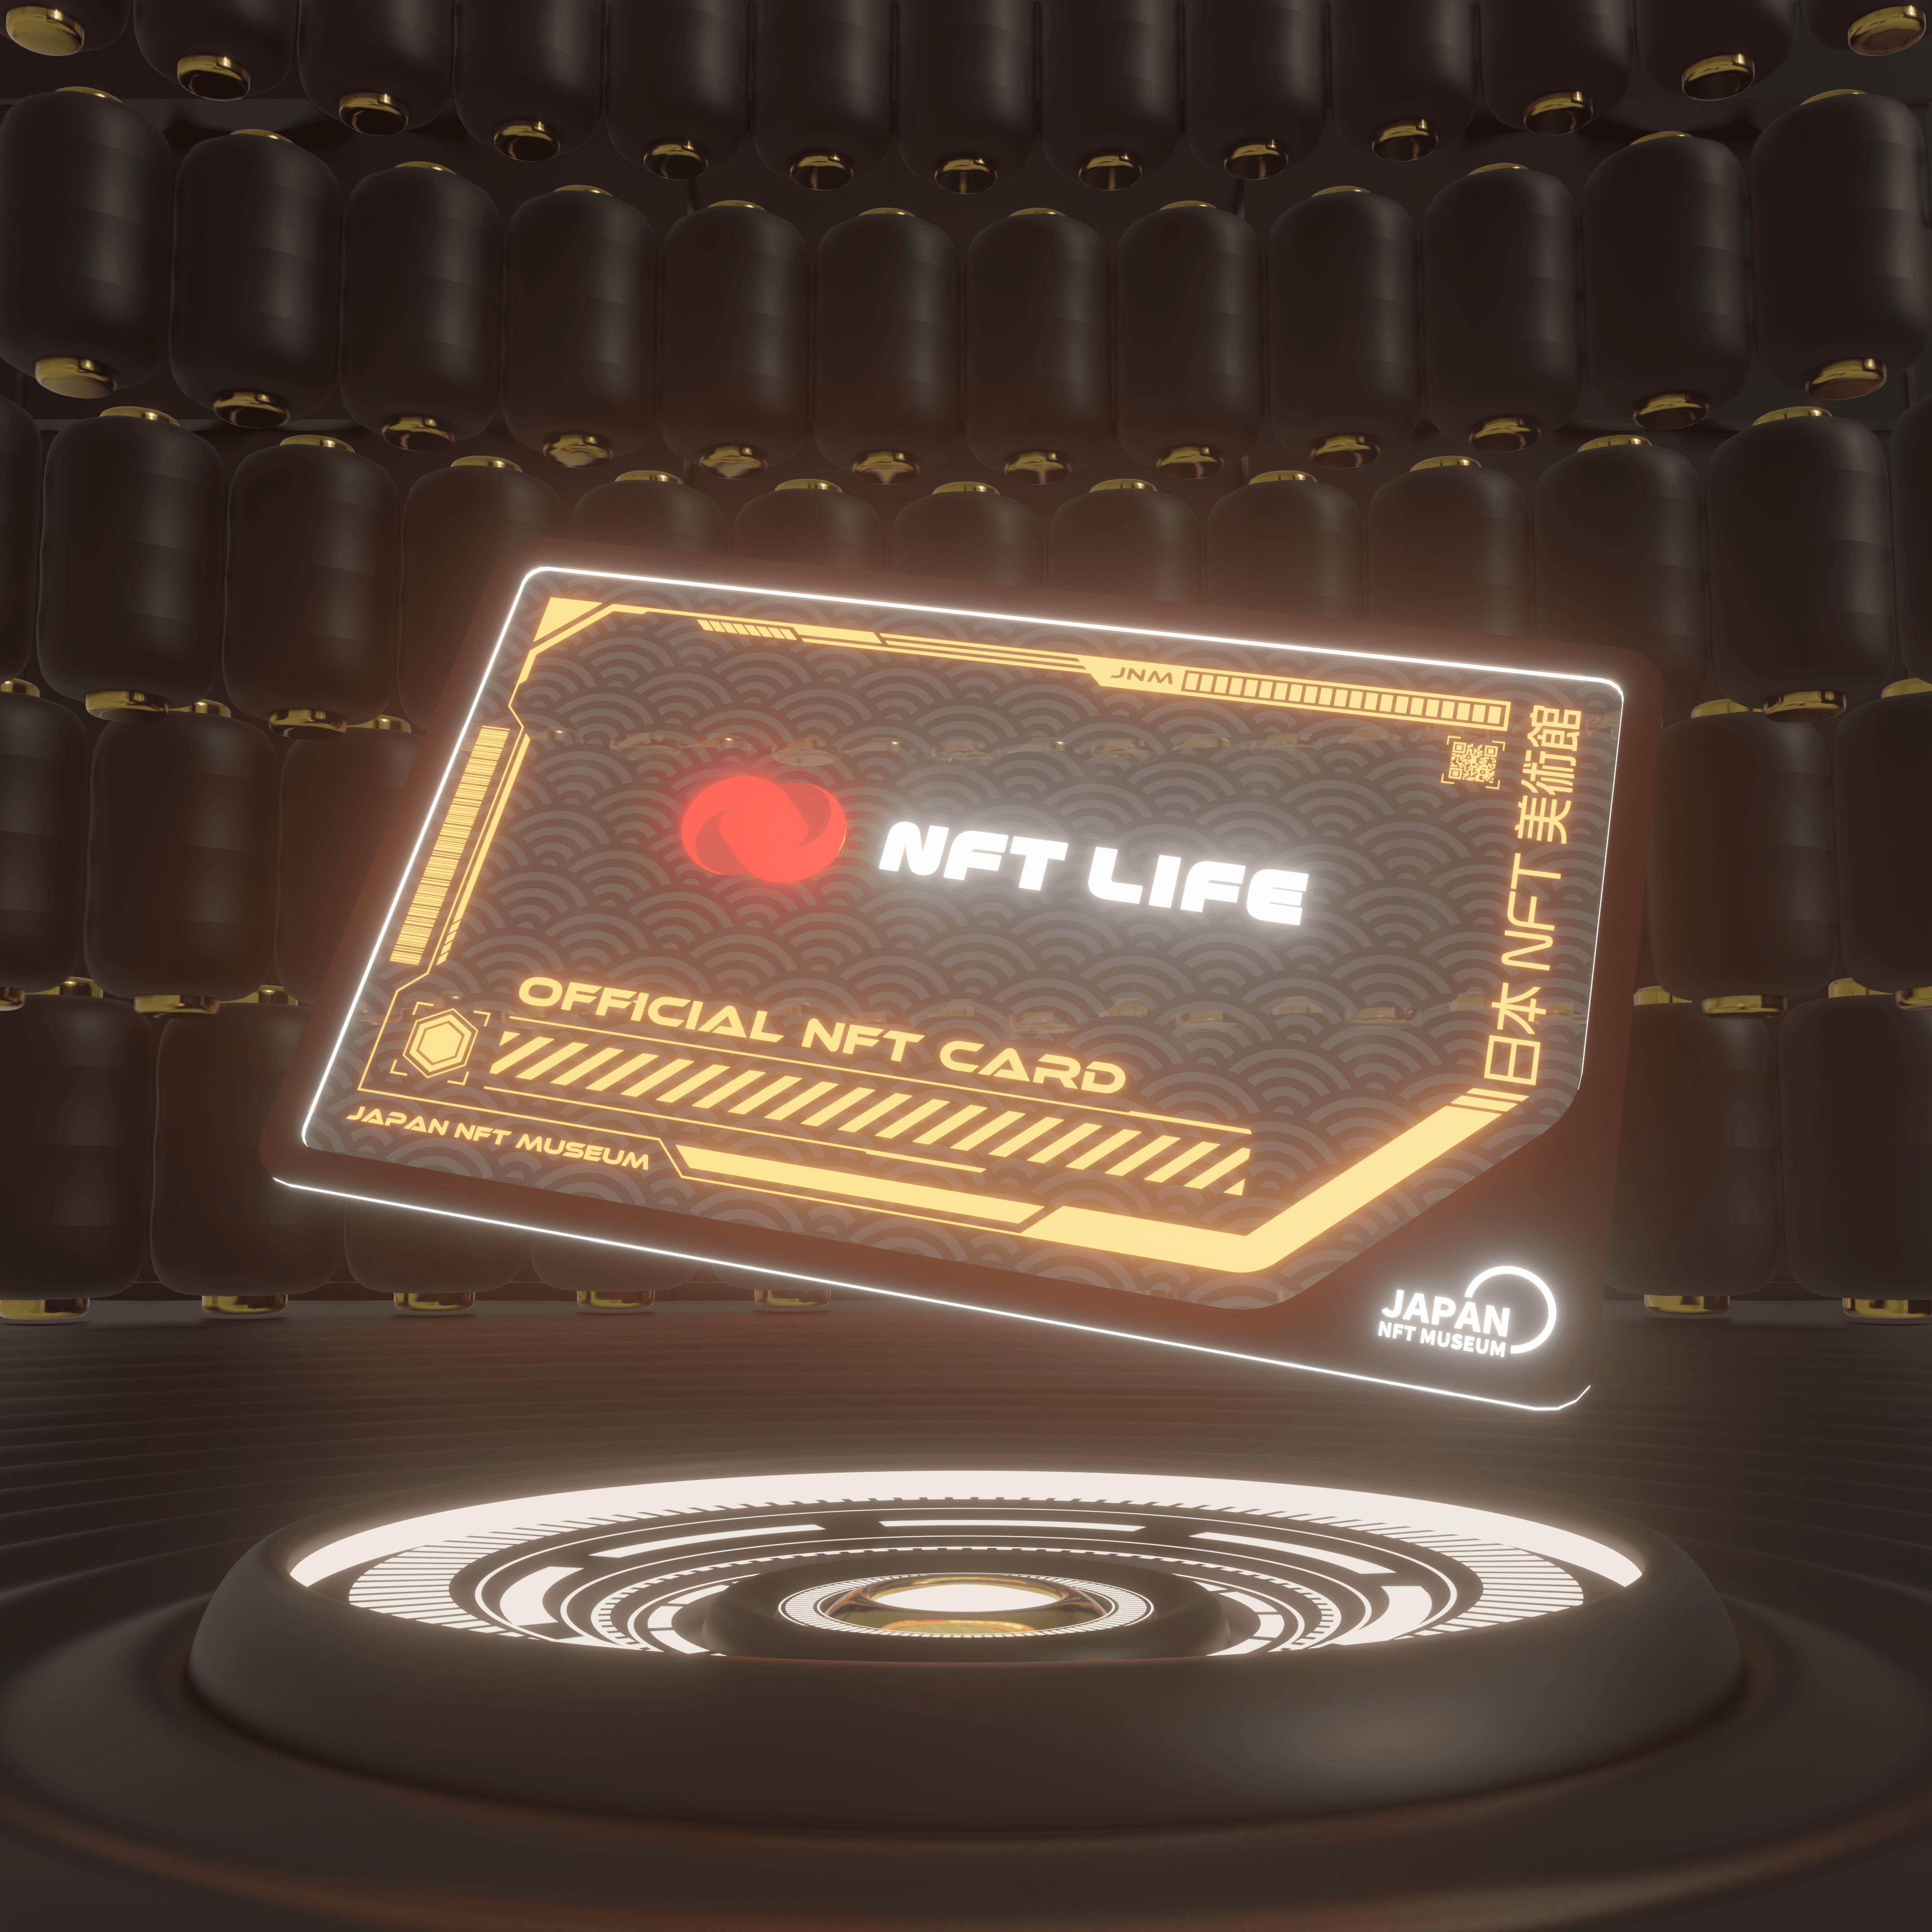 NFT LIFE CARD